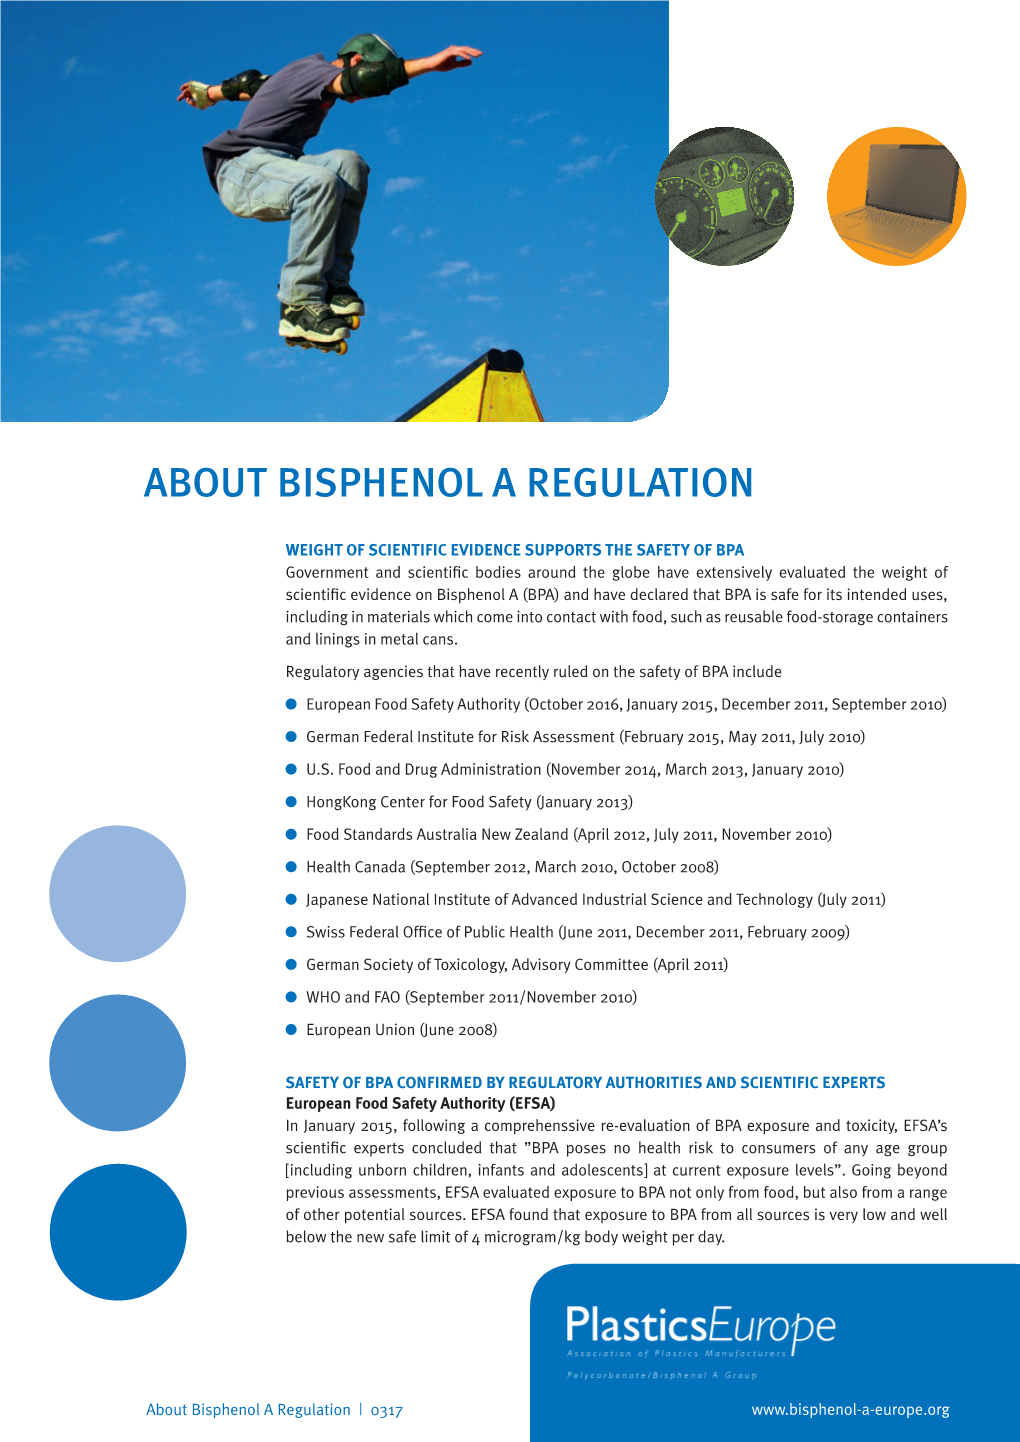 About Bisphenol a Regulation